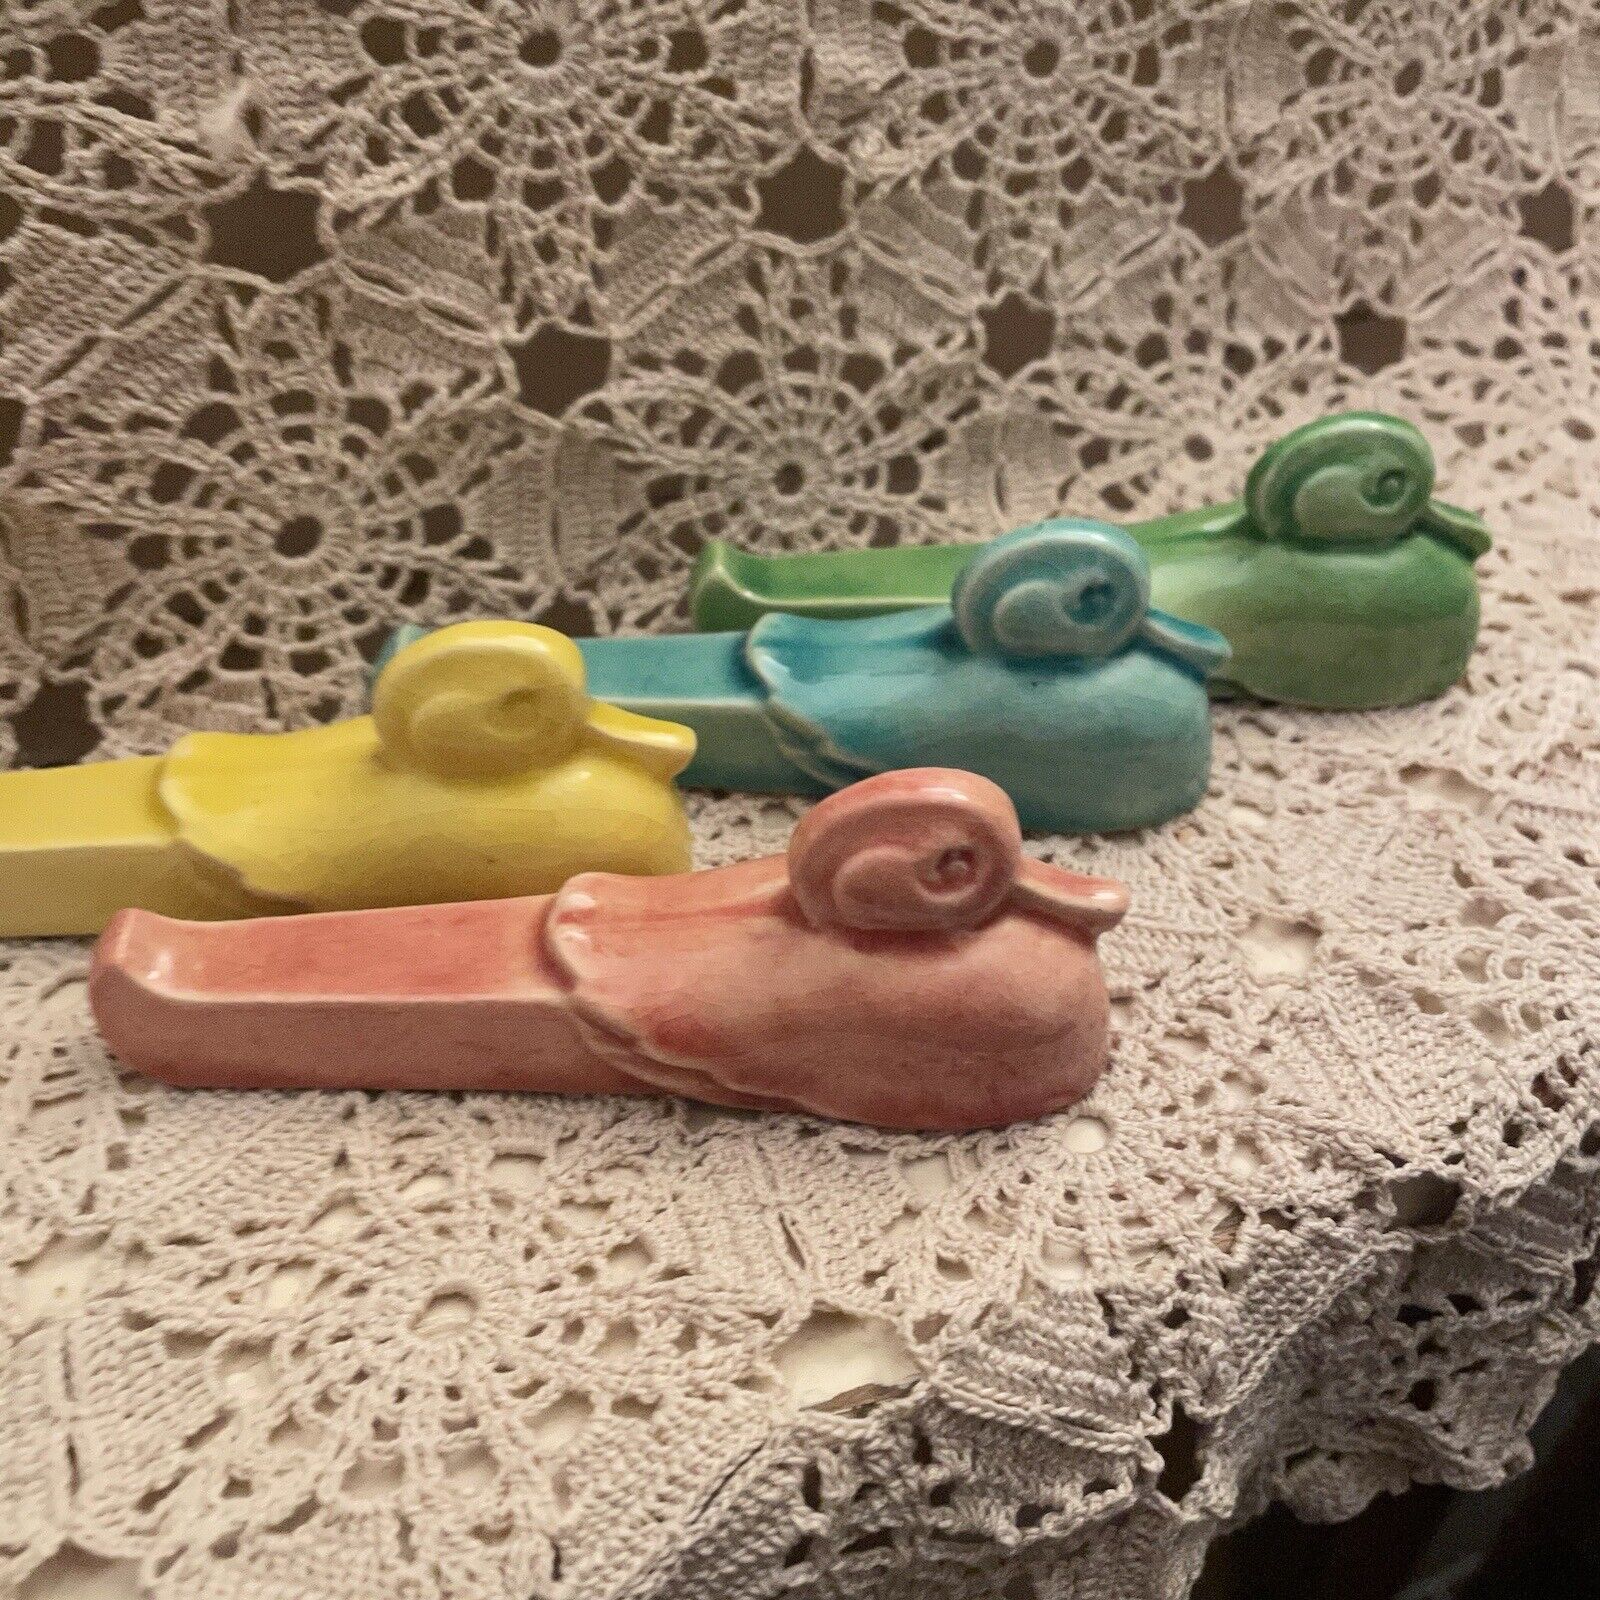 French Art Deco knife rests Ducks Crackle Glaze Ceramic Antique Set 4